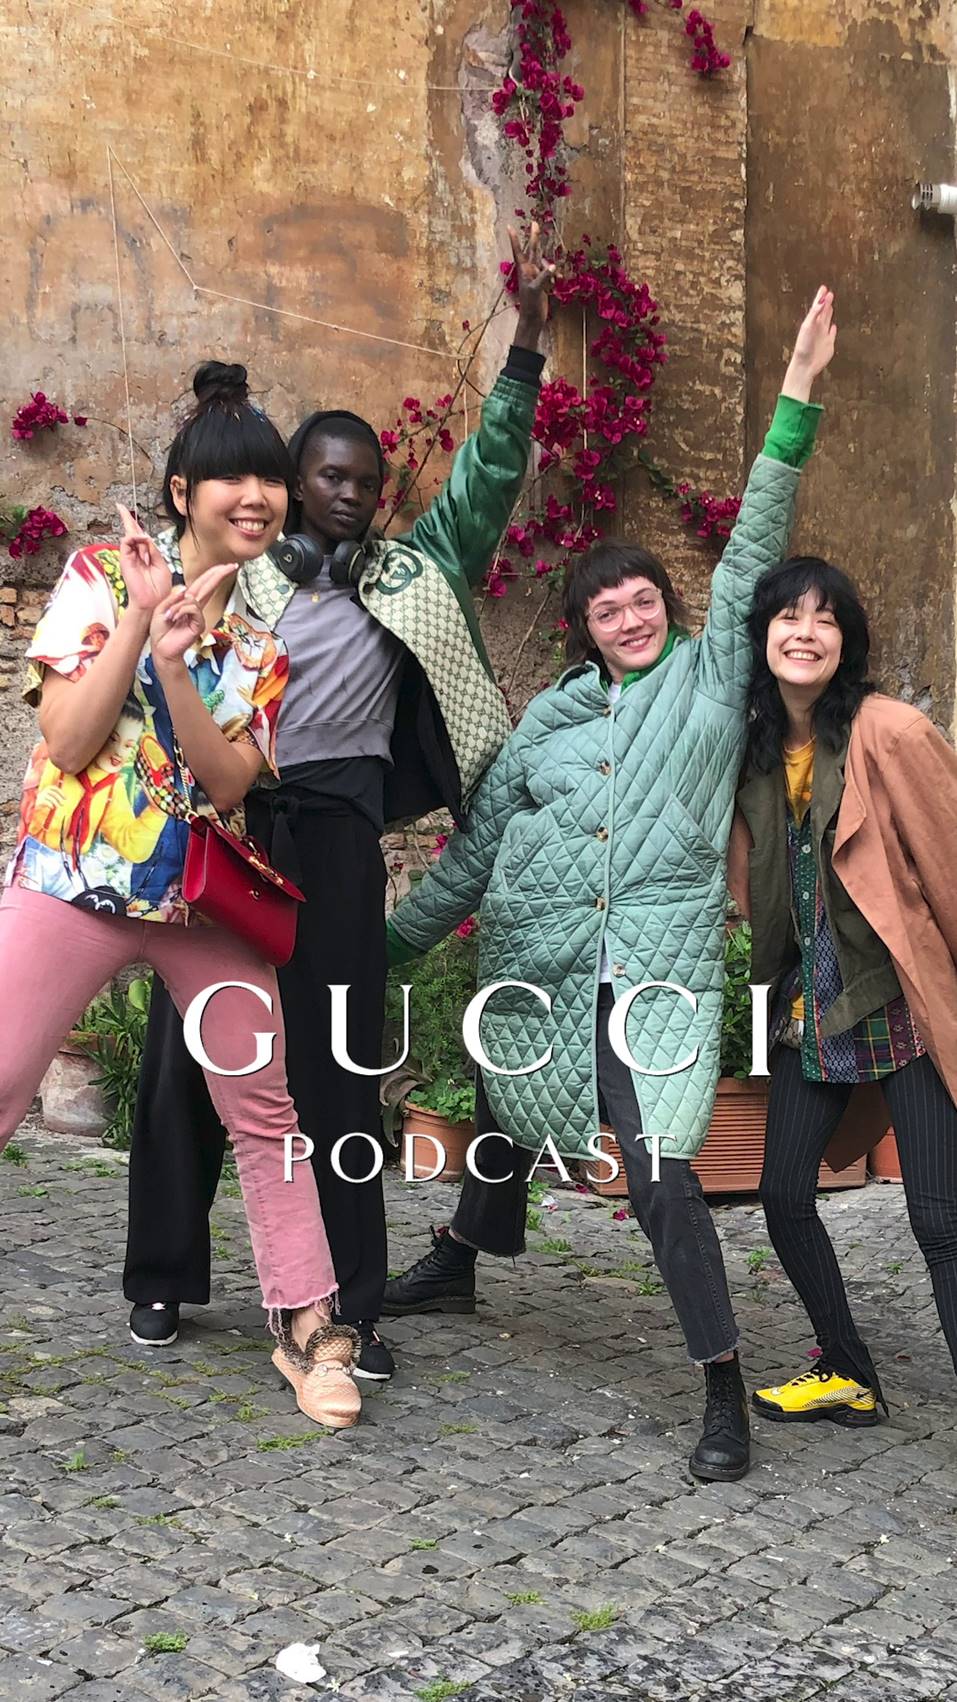 Gucci Podcast : libérez votre imagination